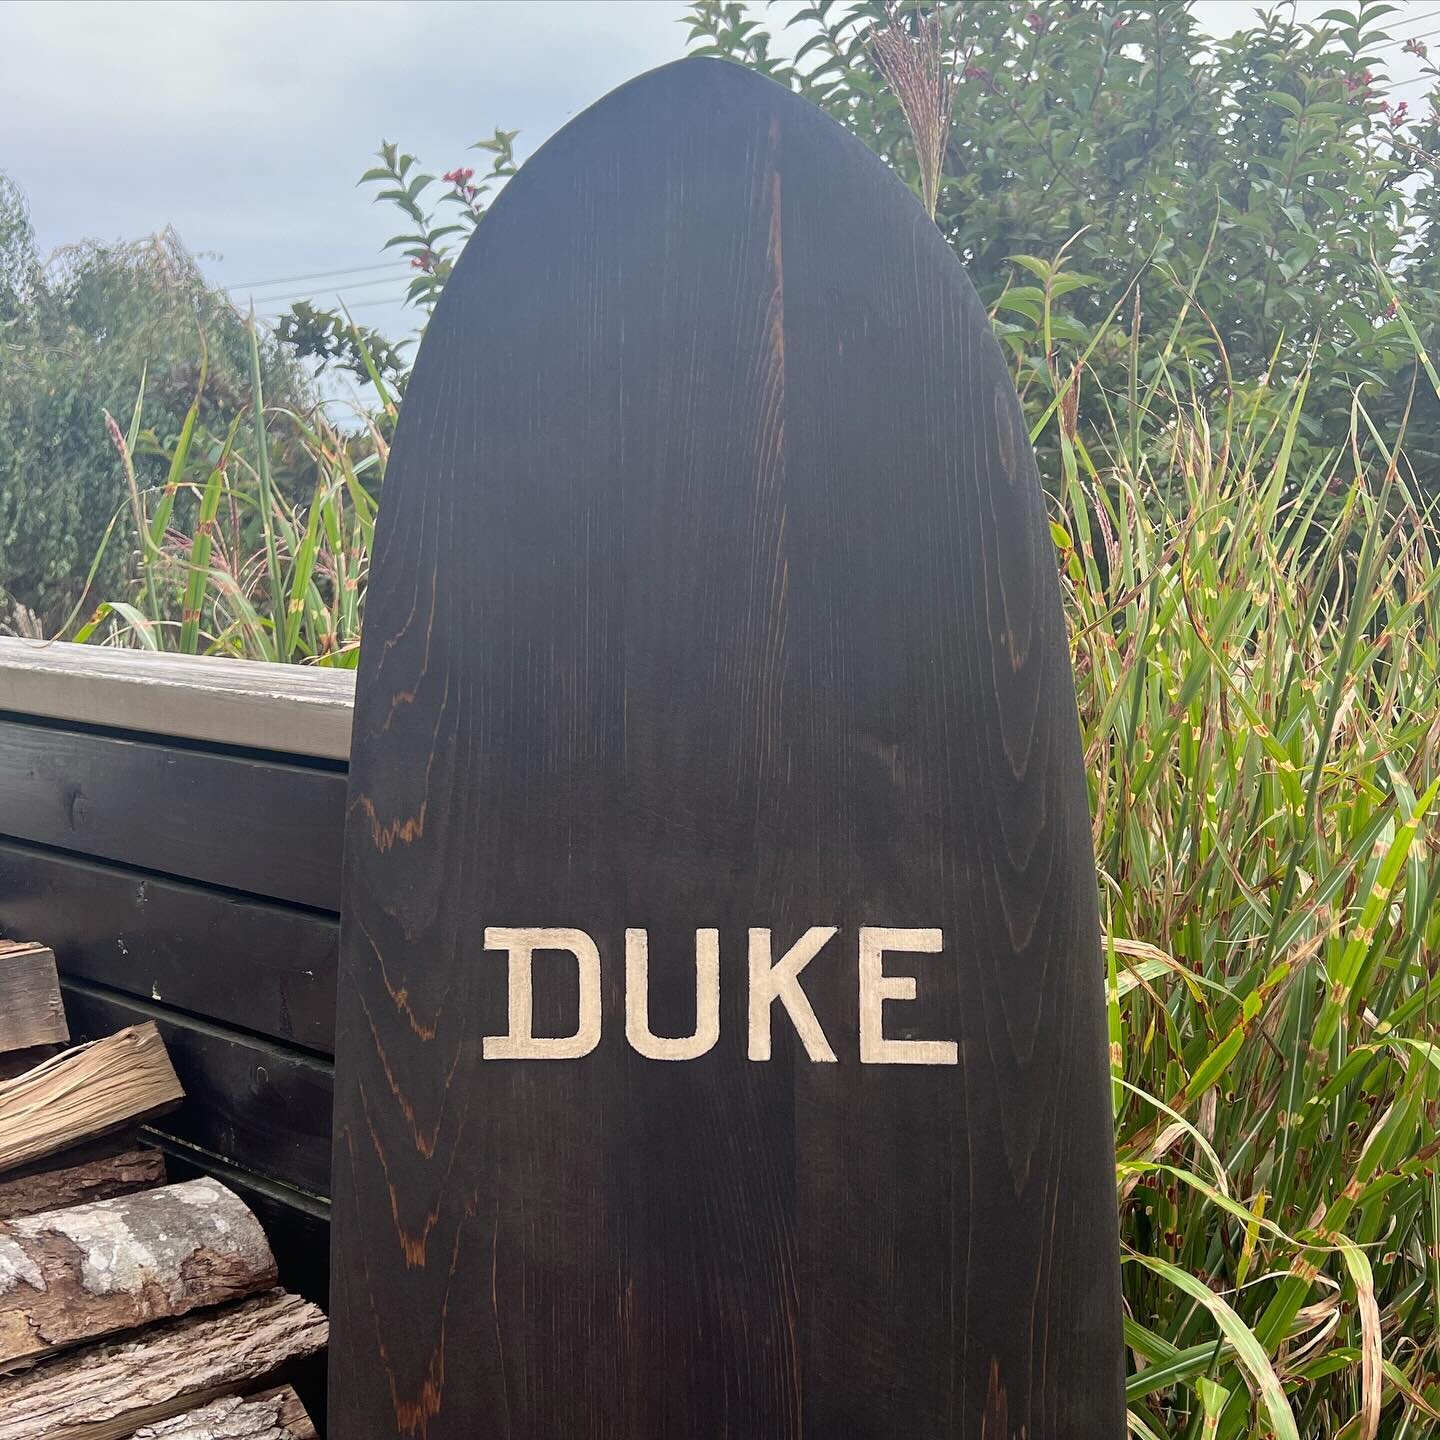 Fun Sunday project! #dukekahanamoku #duke #honalulu #hawaii #type #typography